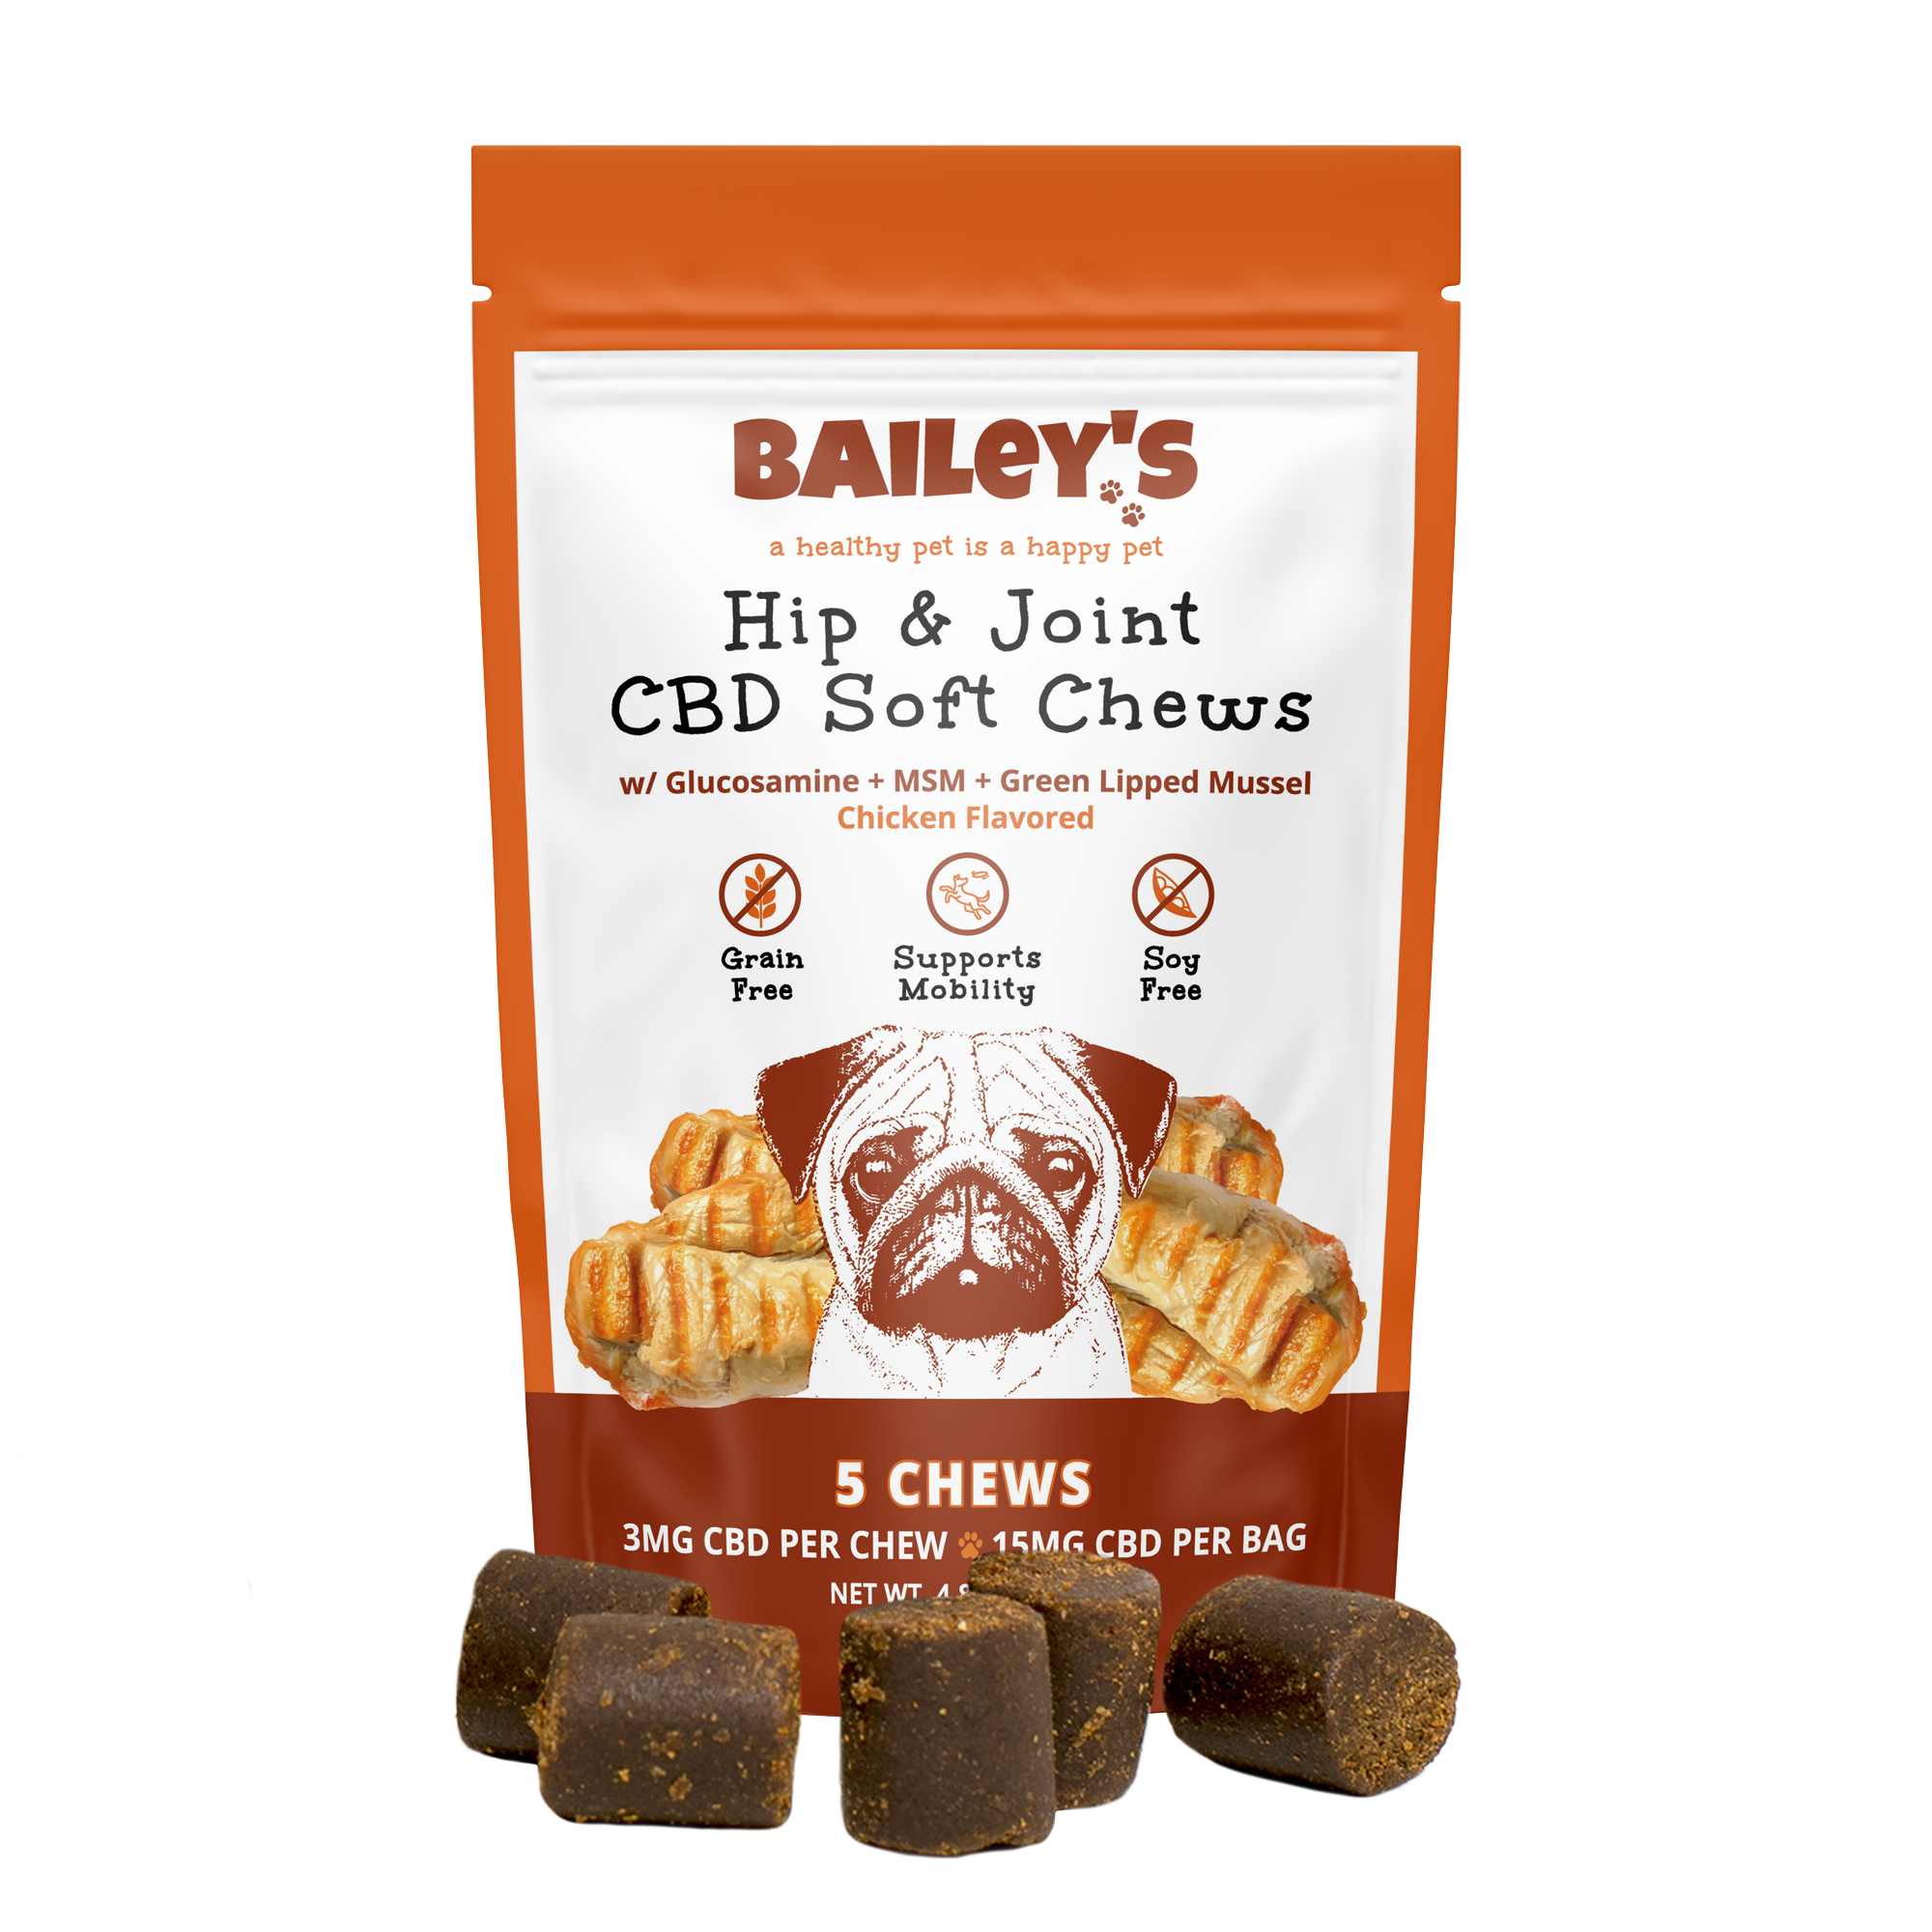 Baileys Hip & Joint CBD Soft Chews 5 Count